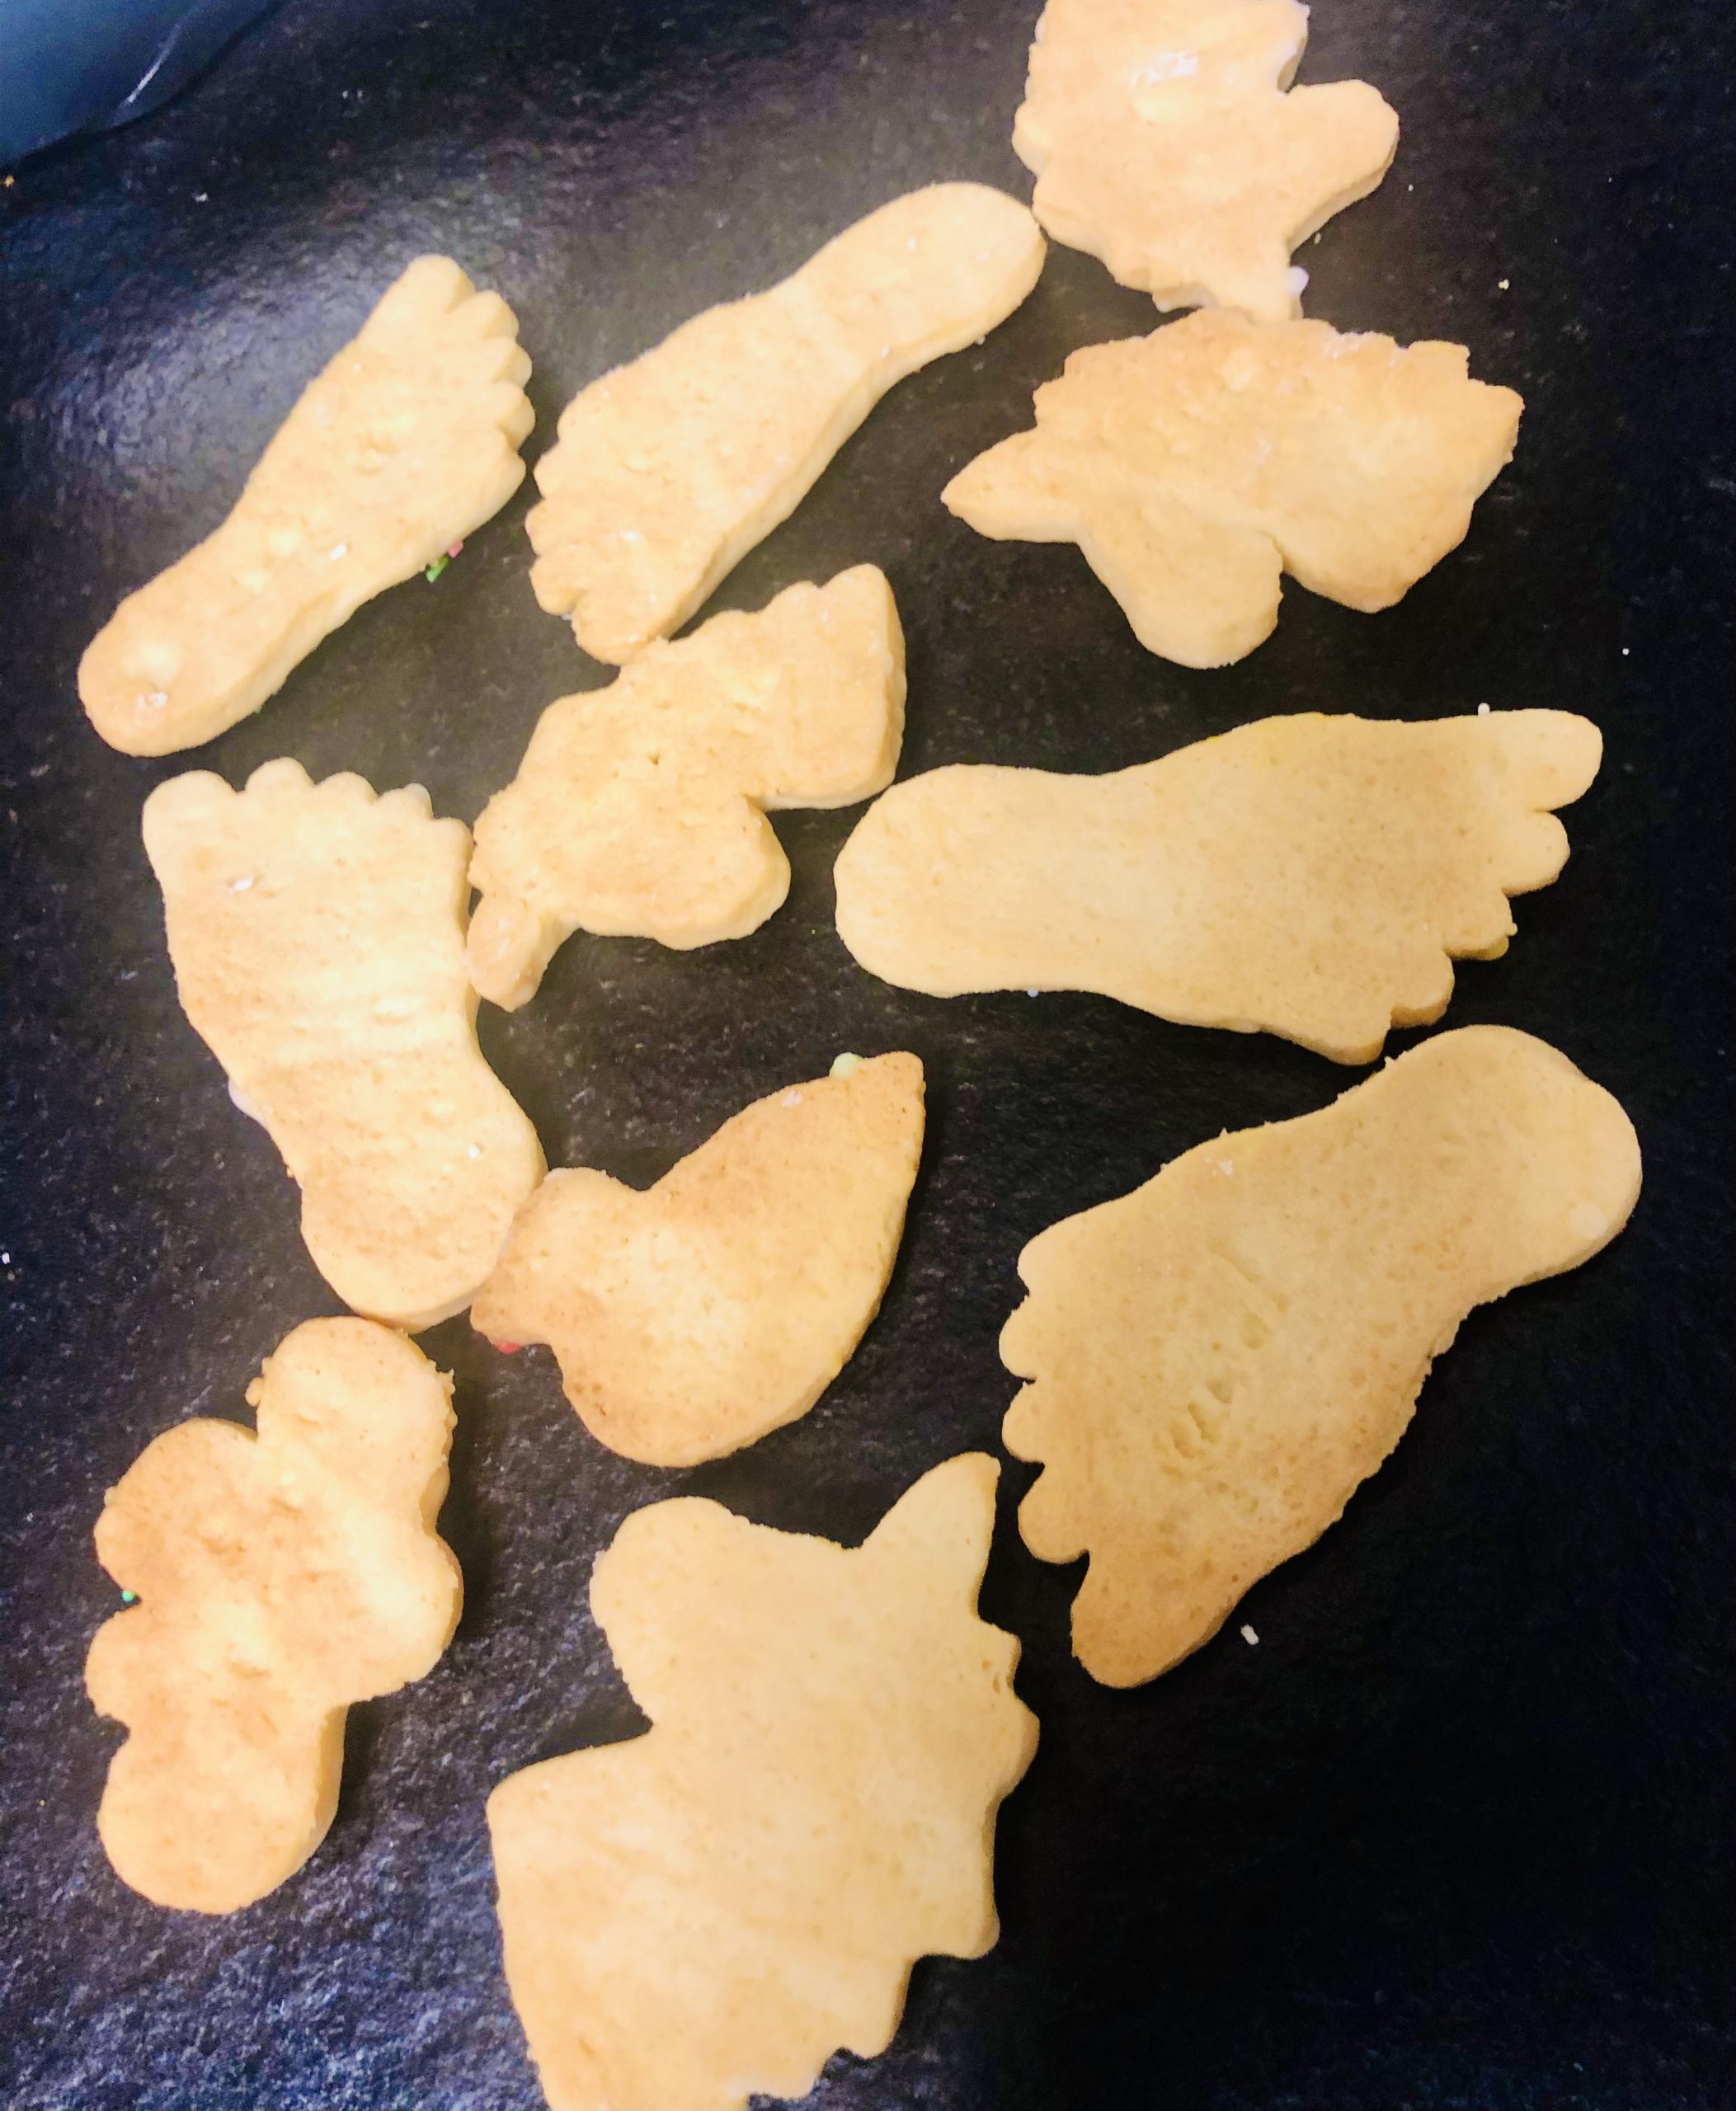 Bild zum Schritt 6 für das Bastel- und DIY-Abenteuer für Kinder: 'Die Kekse herausnehmen, sobald sie leicht braun sind und abkühlen...'